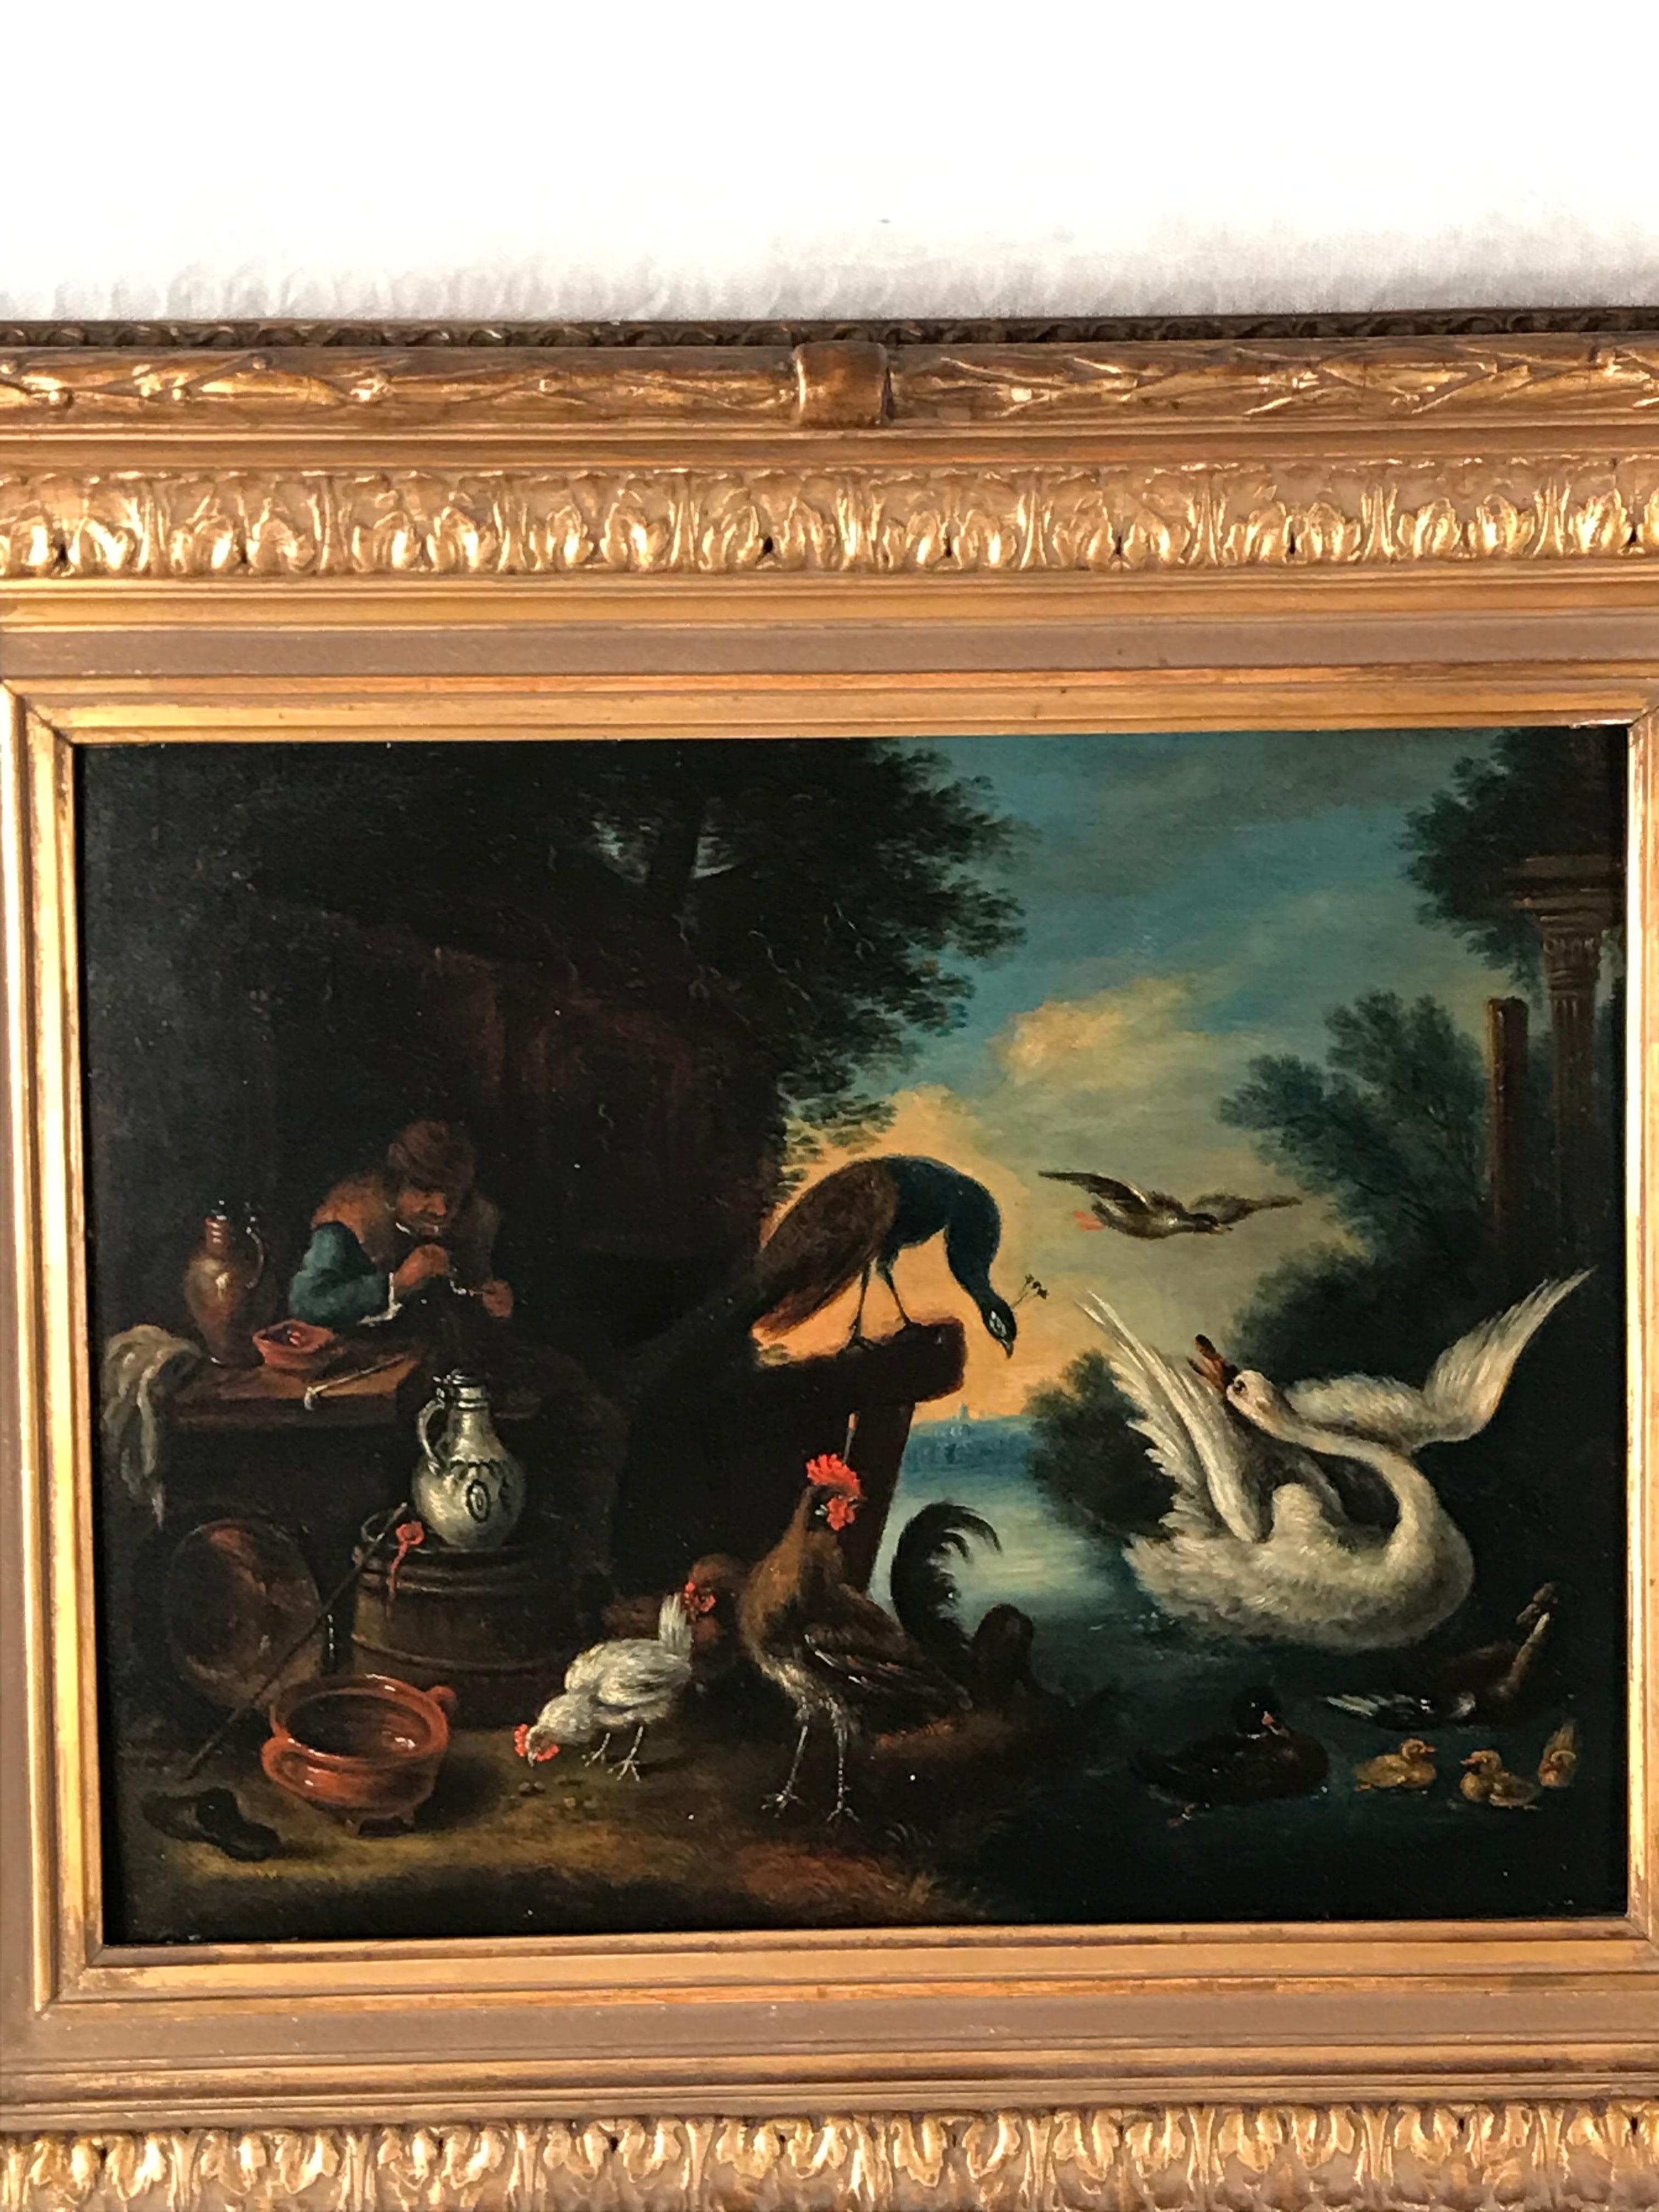 Unbekannter flämischer Künstler, Belgien 18. Jahrhundert, im rechten Teil des Gemäldes stellt der Künstler einen Mann dar, der vor einer Taverne sitzt. Er ist umgeben von Krügen und Tellern aus Delfter Barockkeramik. Die rechte Seite des Gemäldes